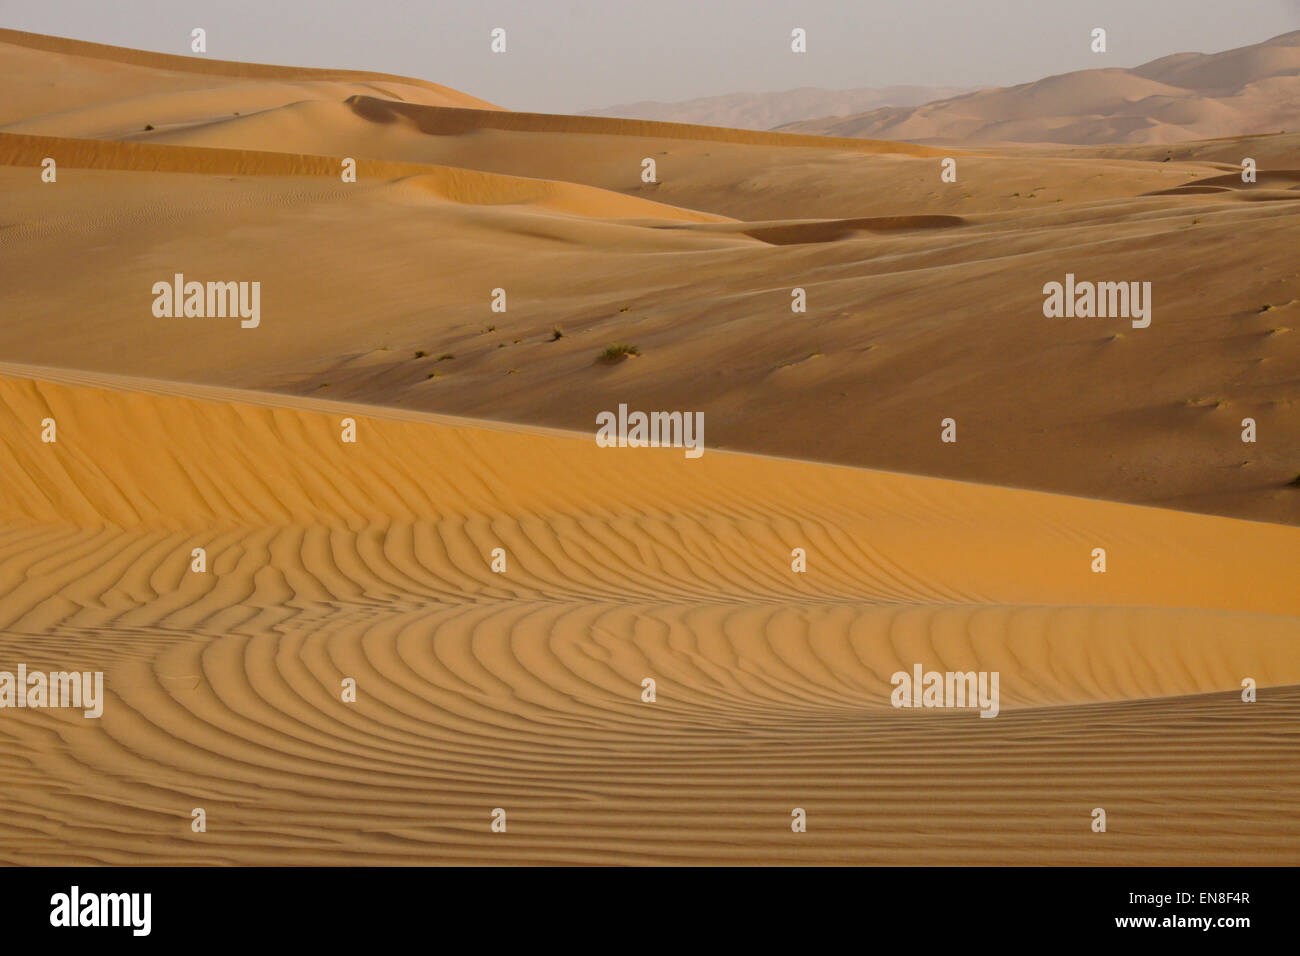 Contours of sand dunes at Liwa, Abu Dhabi, UAE Stock Photo